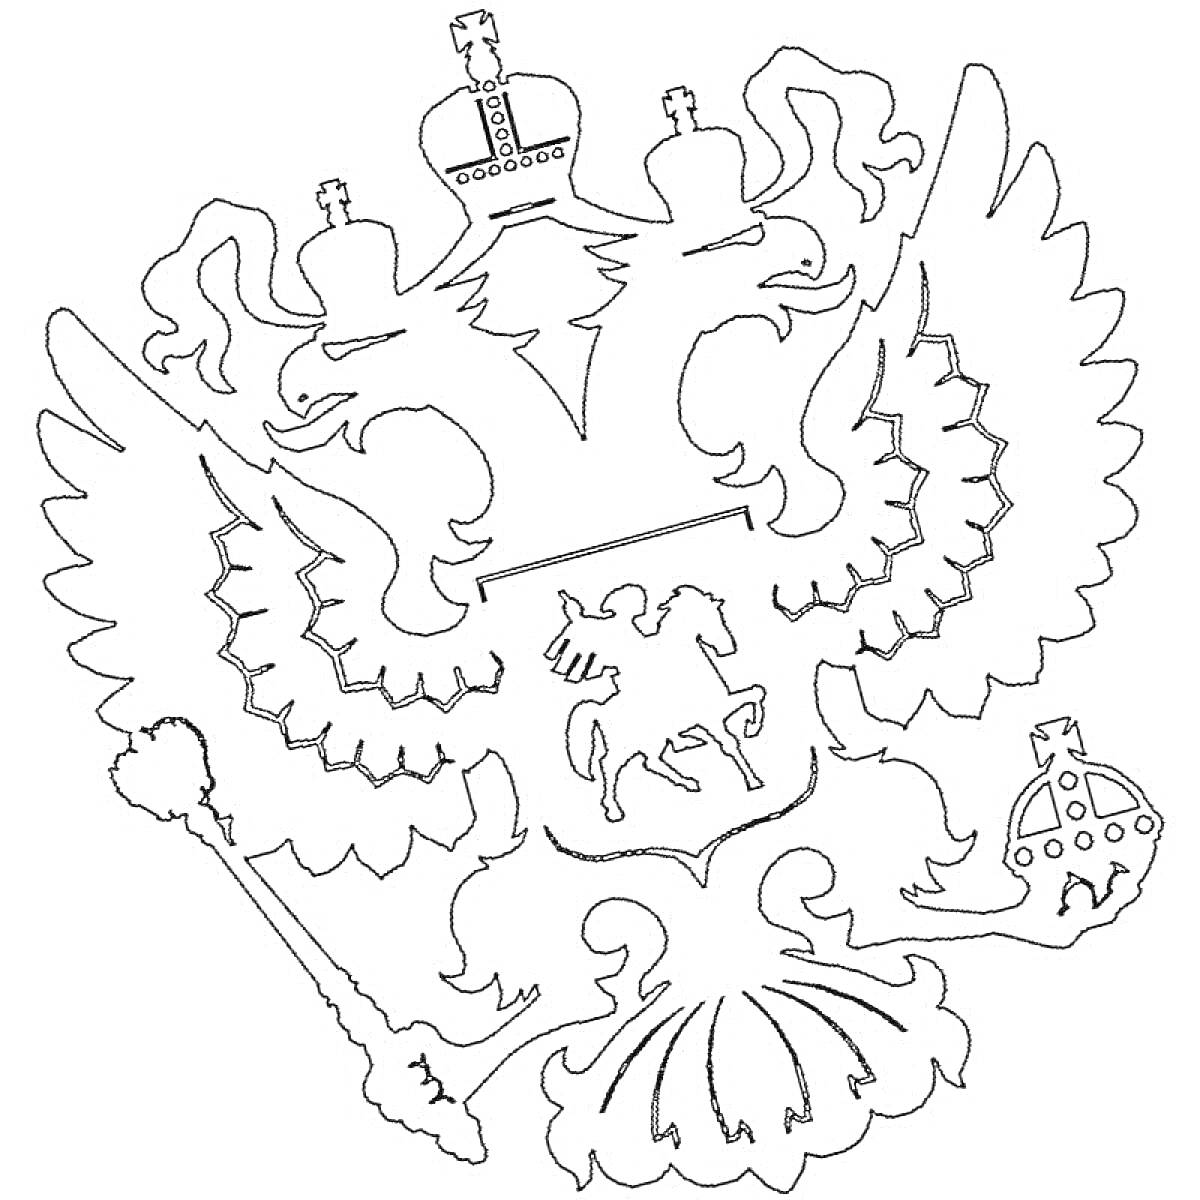 Герб России: двуглавый орел с тремя коронами, скипетром и державой, Георгий Победоносец на щите